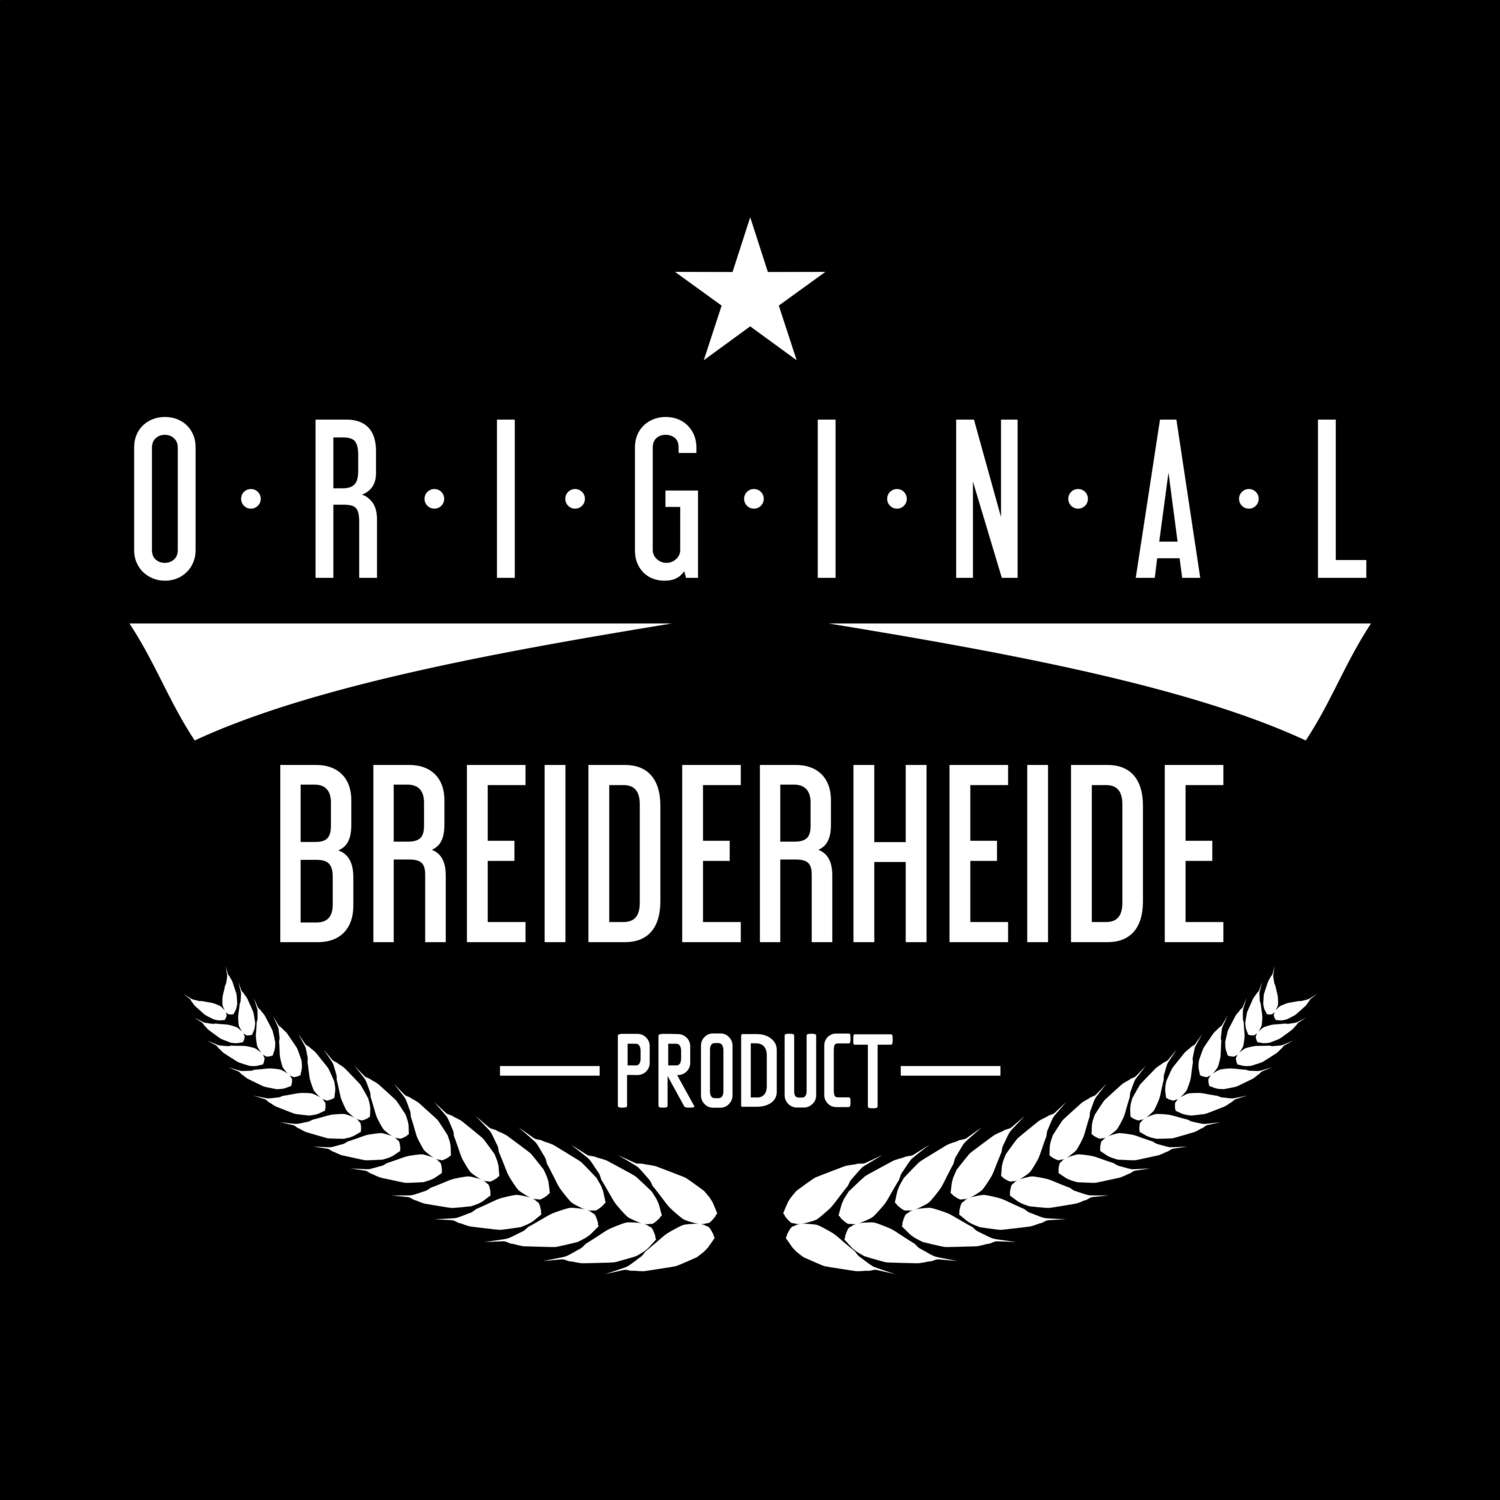 Breiderheide T-Shirt »Original Product«